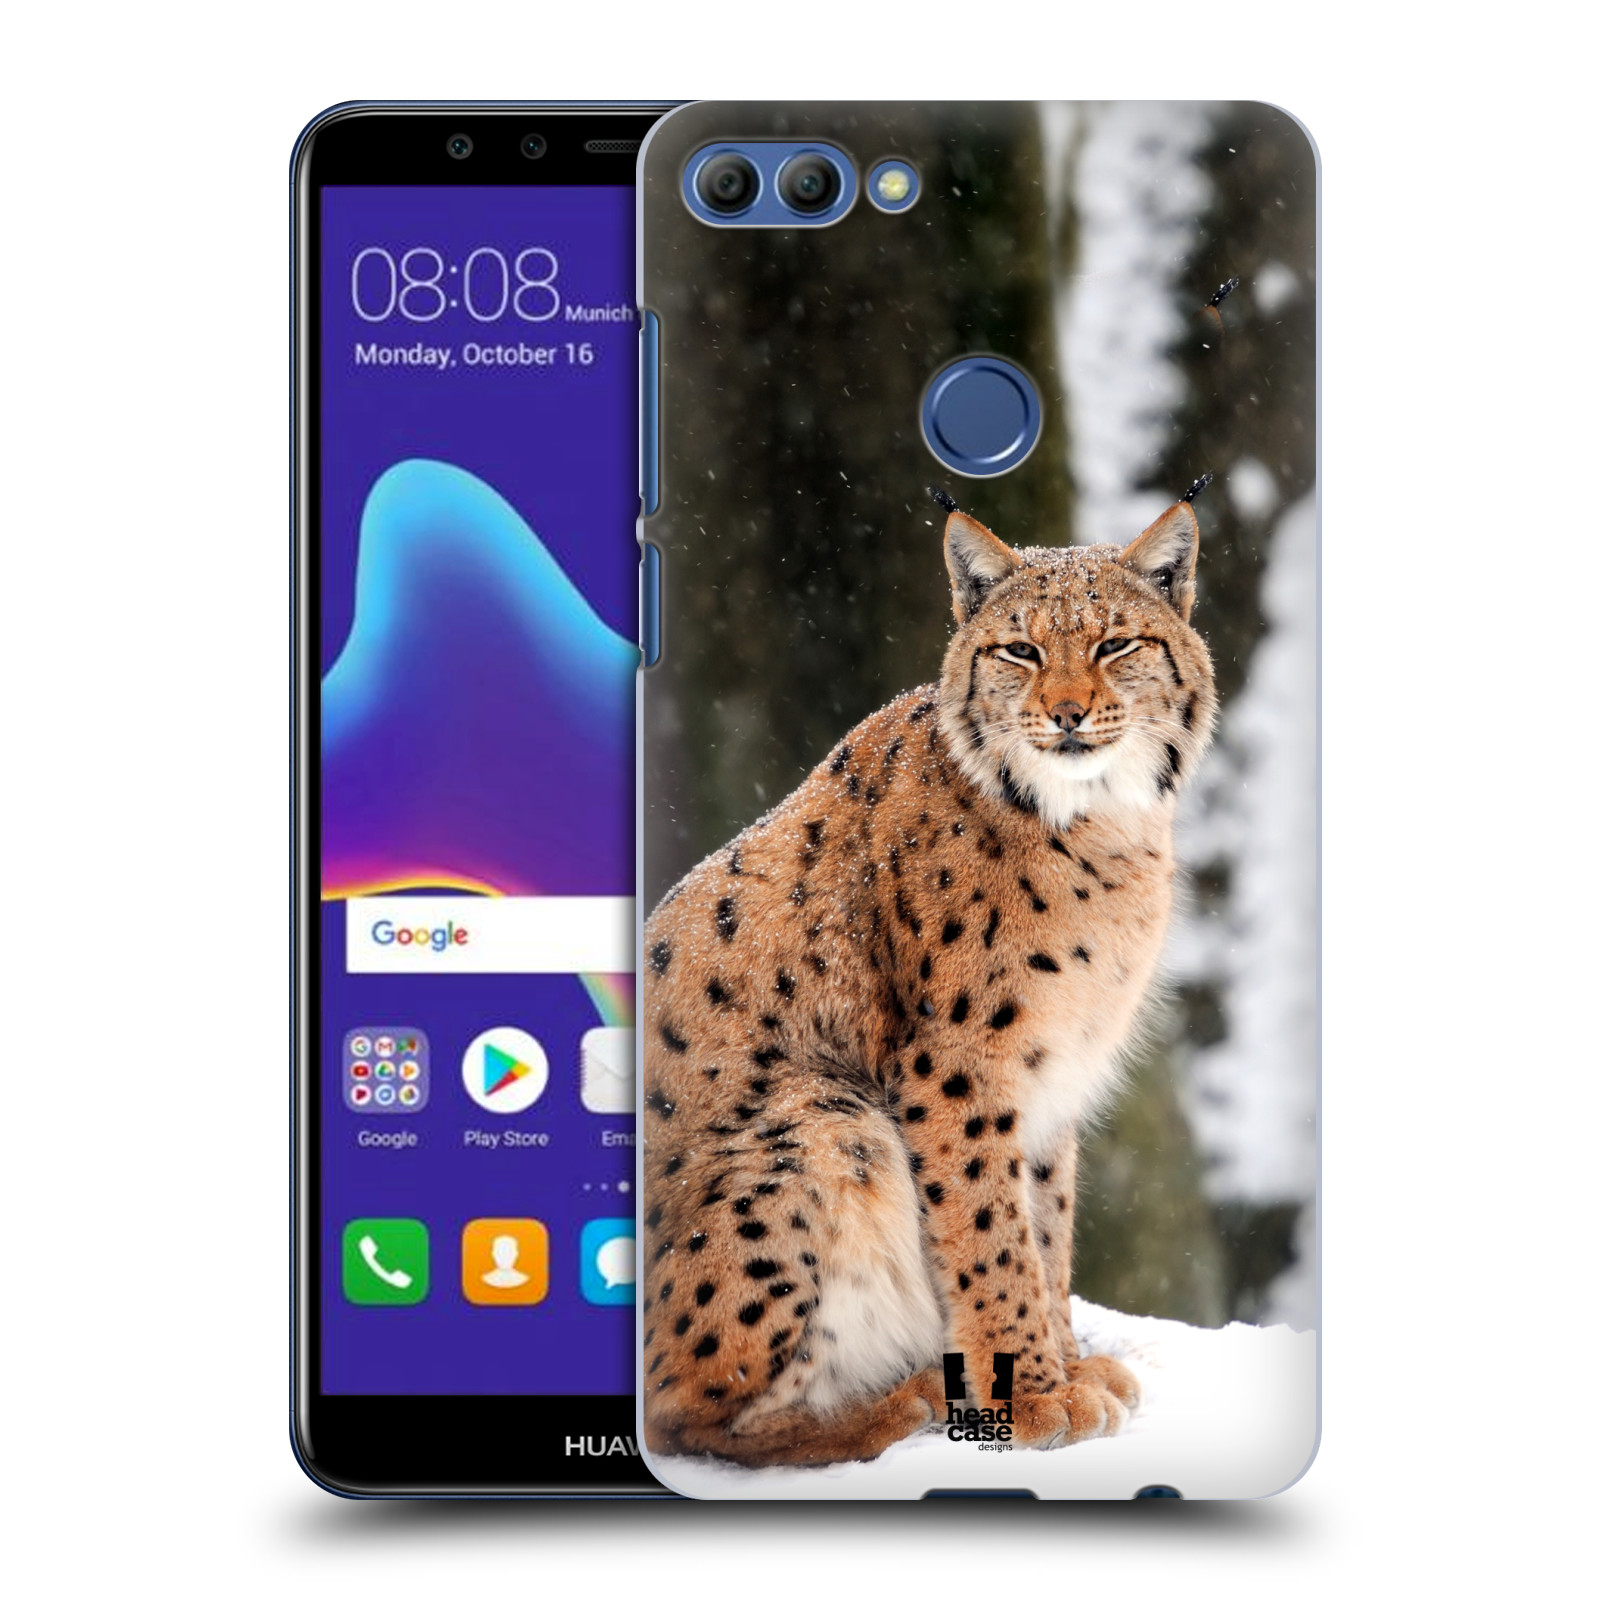 HEAD CASE plastový obal na mobil Huawei Y9 2018 vzor slavná zvířata foto rys